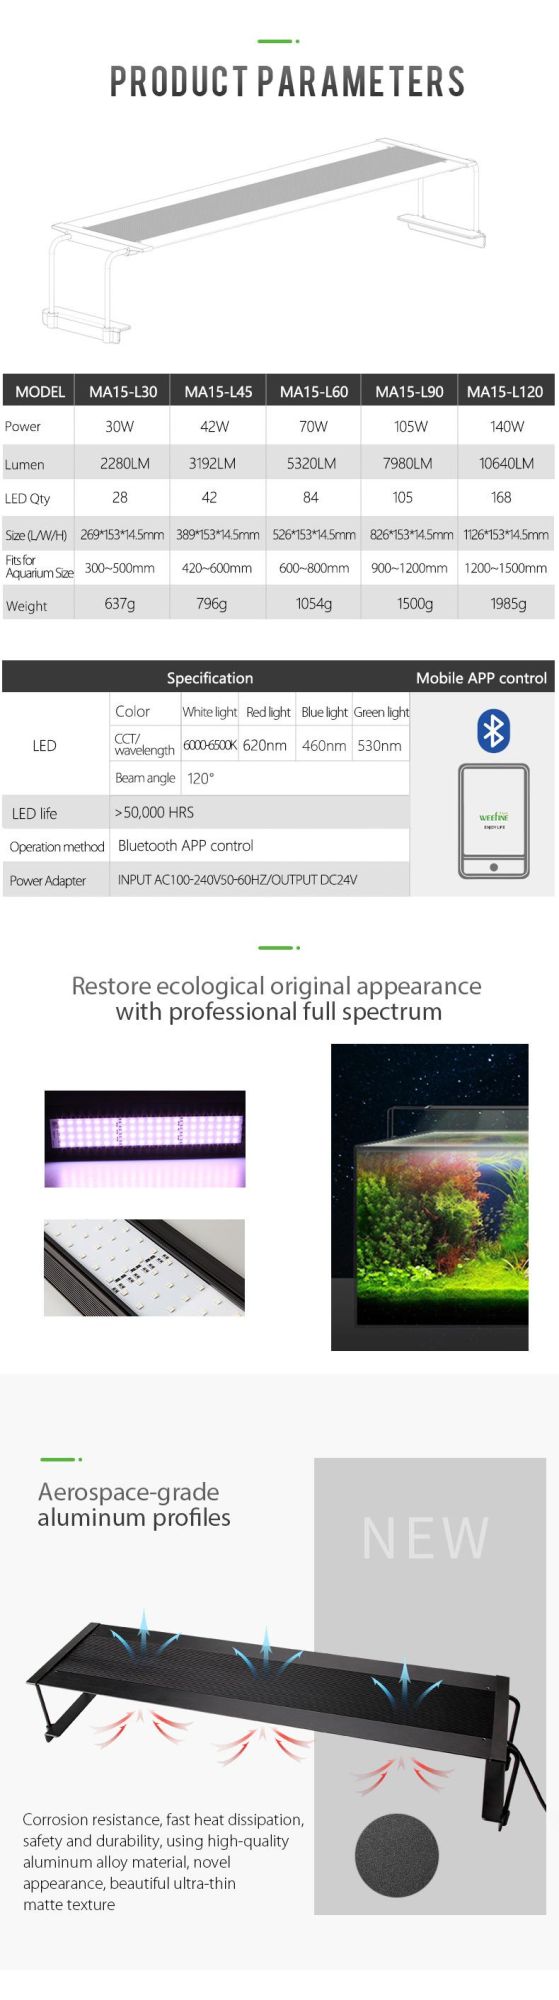 140W Wrgb Customized LED Aquarium Lights for Ultra-Thin Body Design (MA15)